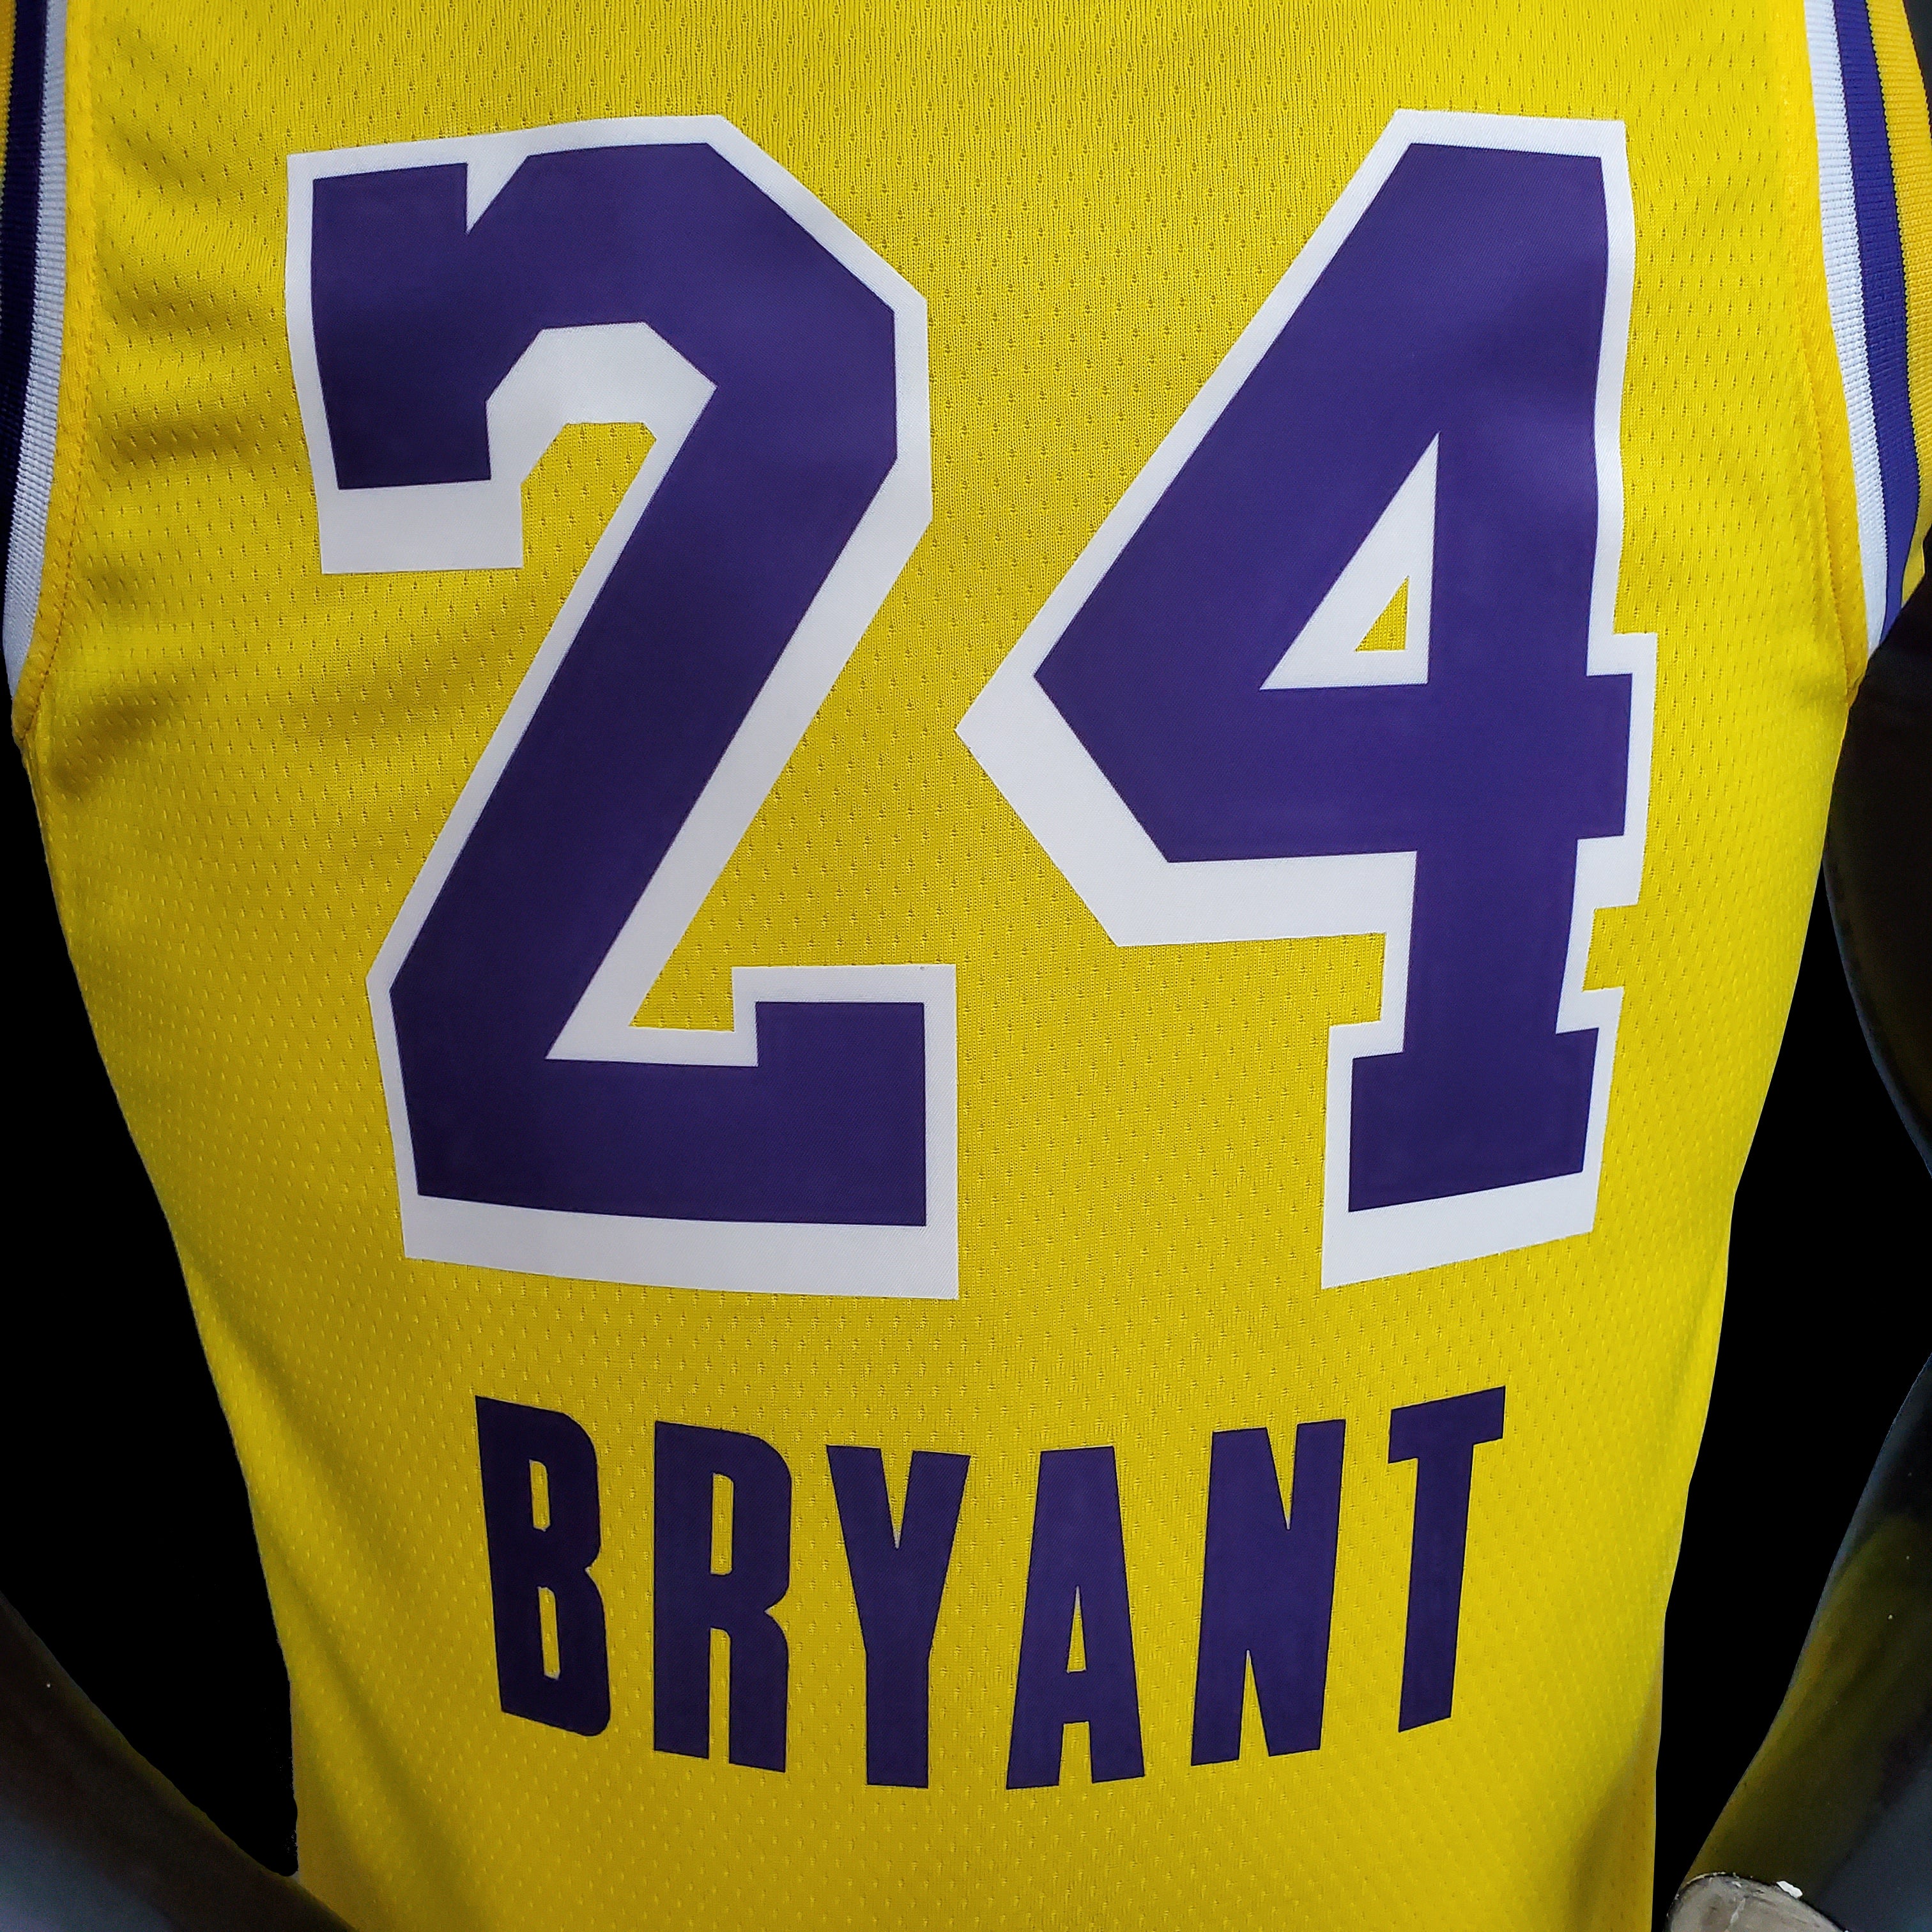 Kobe Bryant Black NBA Fan Jerseys for sale